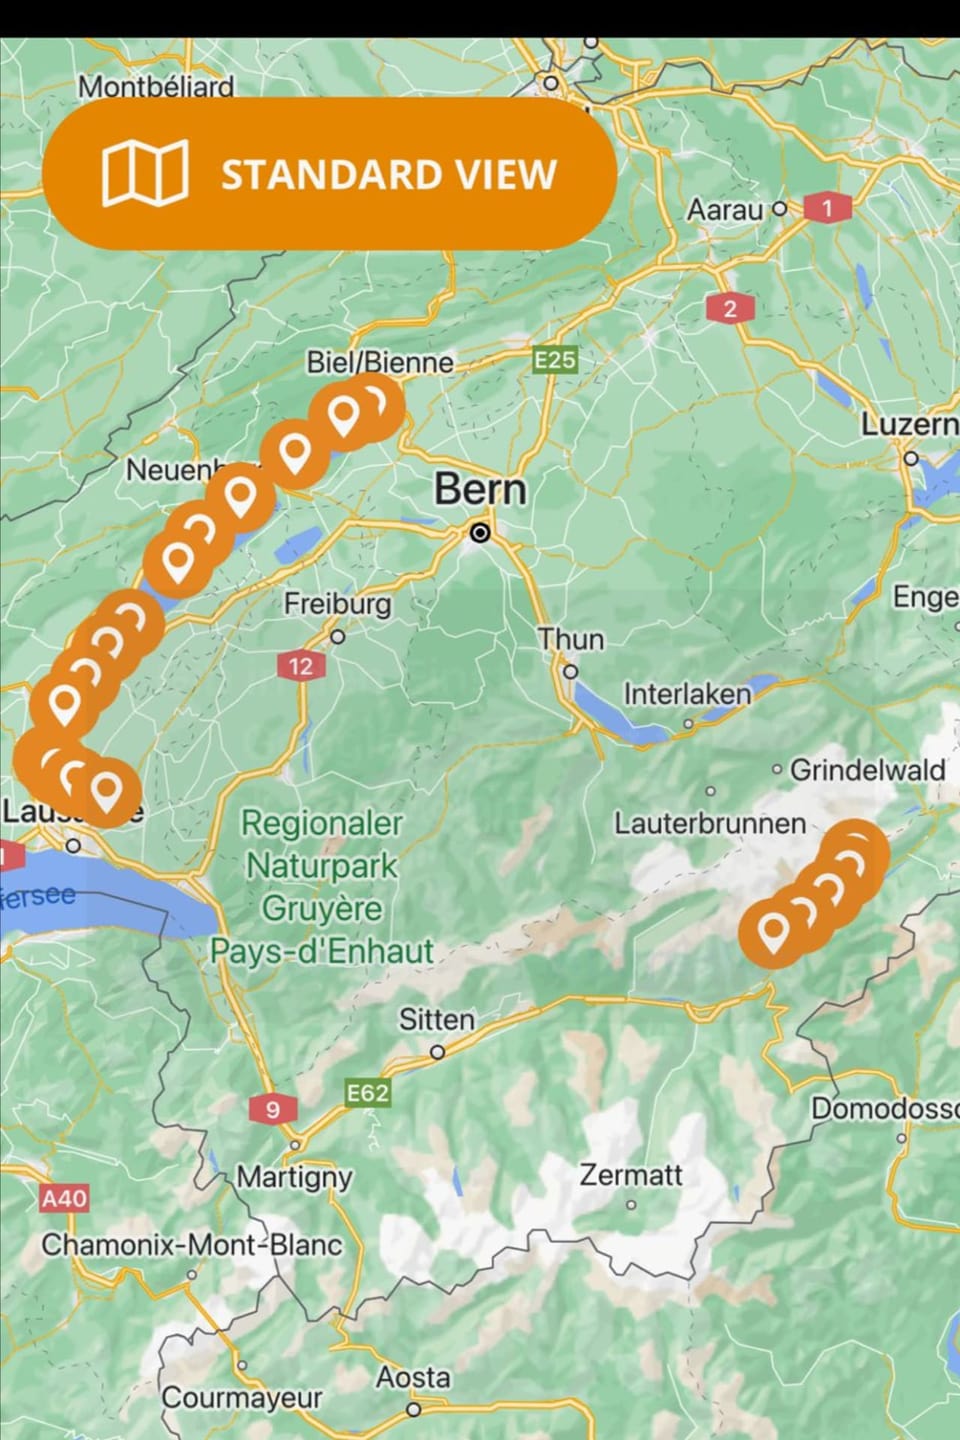 carta geografica da la Svizra cun indicaziuns da GPS per il ballun. Da Bienna fin a Losanna ed en il Vallais.